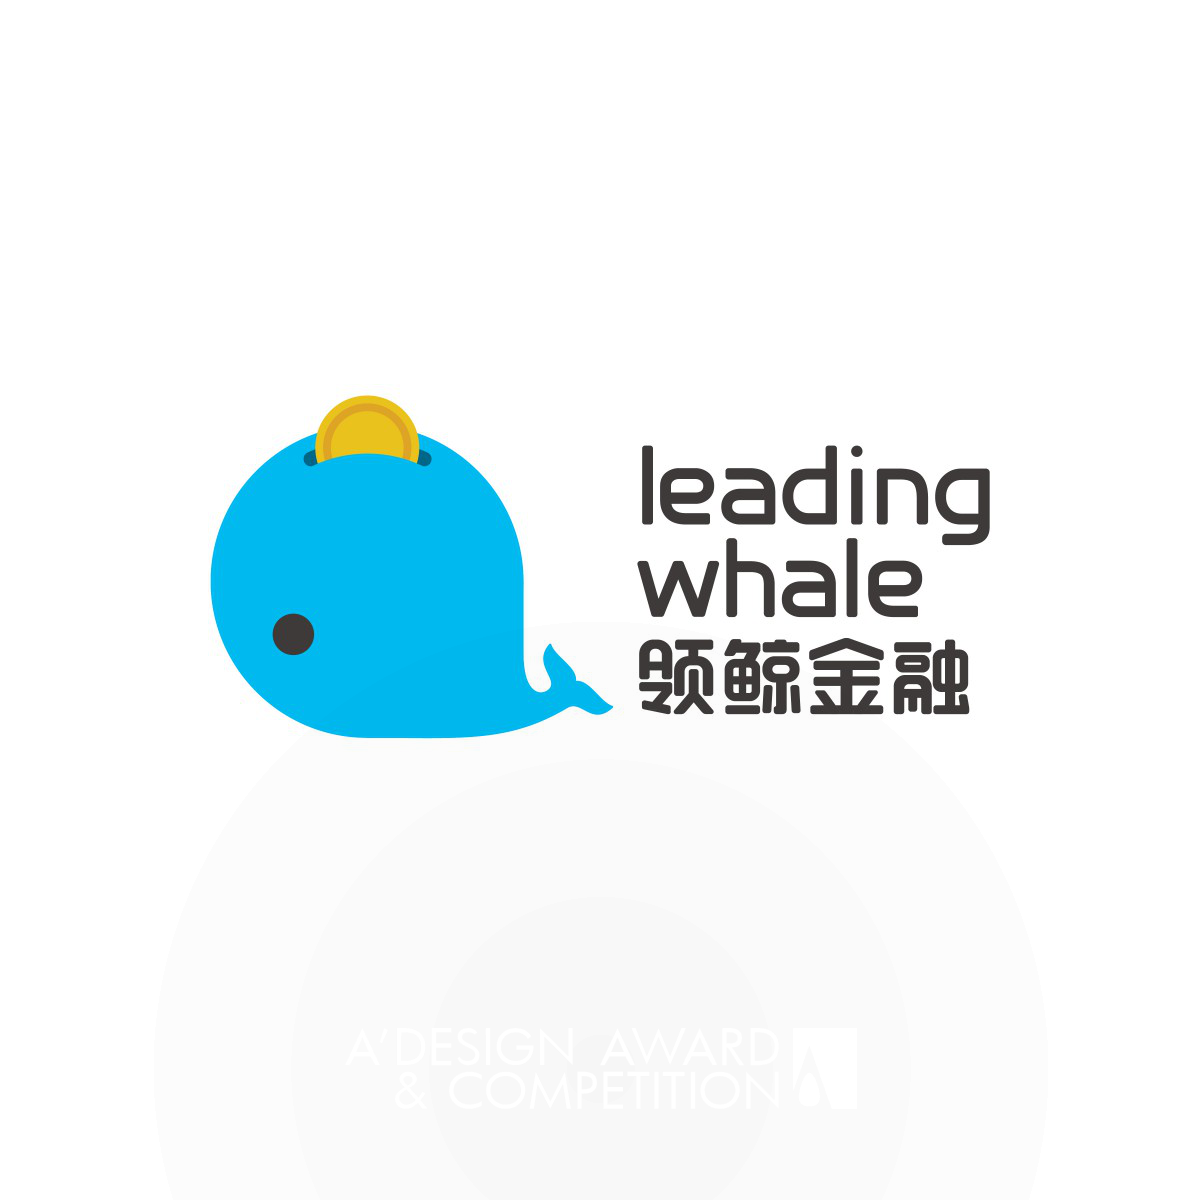 Leading Whale Logo and VI by Yinan lyu, Vin Wen, Xi Chou